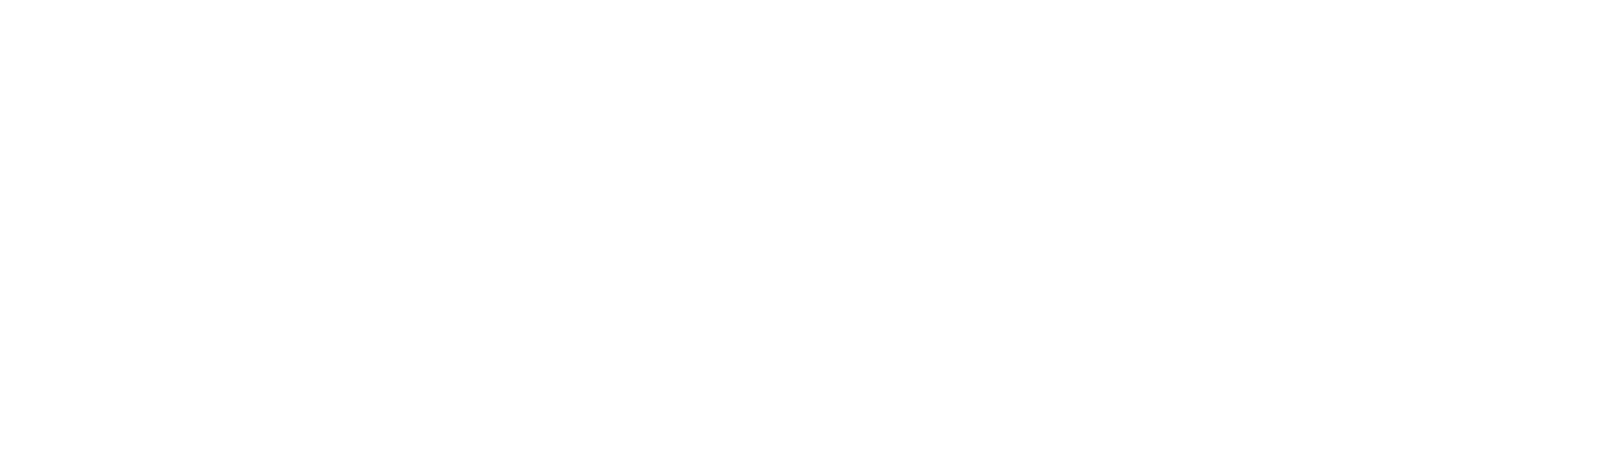 ON24 logo large for dark backgrounds (transparent PNG)